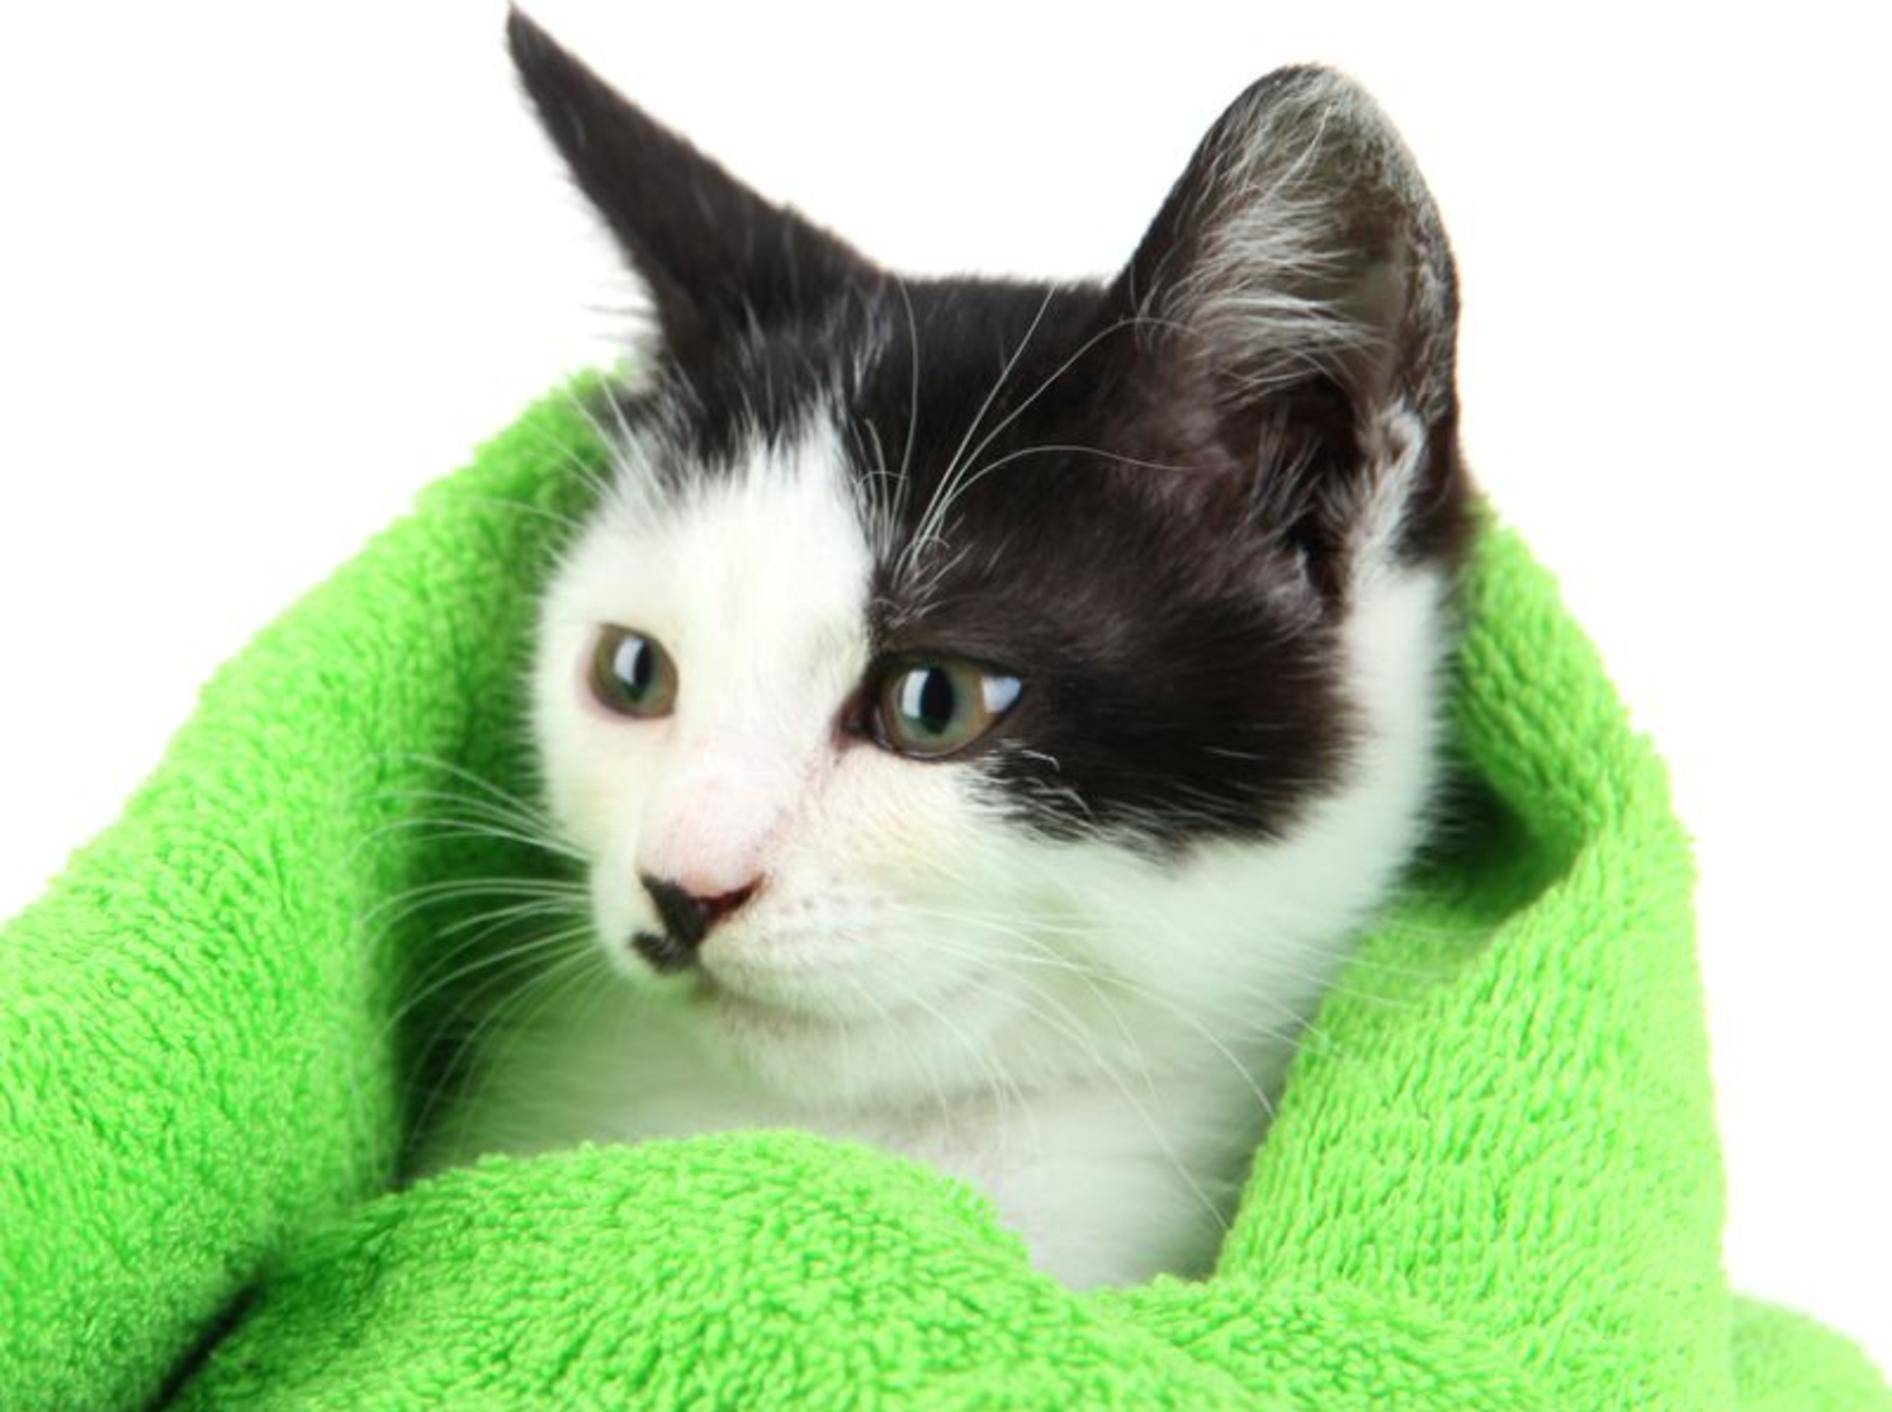 Nach dem Baden gibt es für die Katze ein warmes Handtuch und eine Belohnung – Bild: Shutterstock / Africa Studio